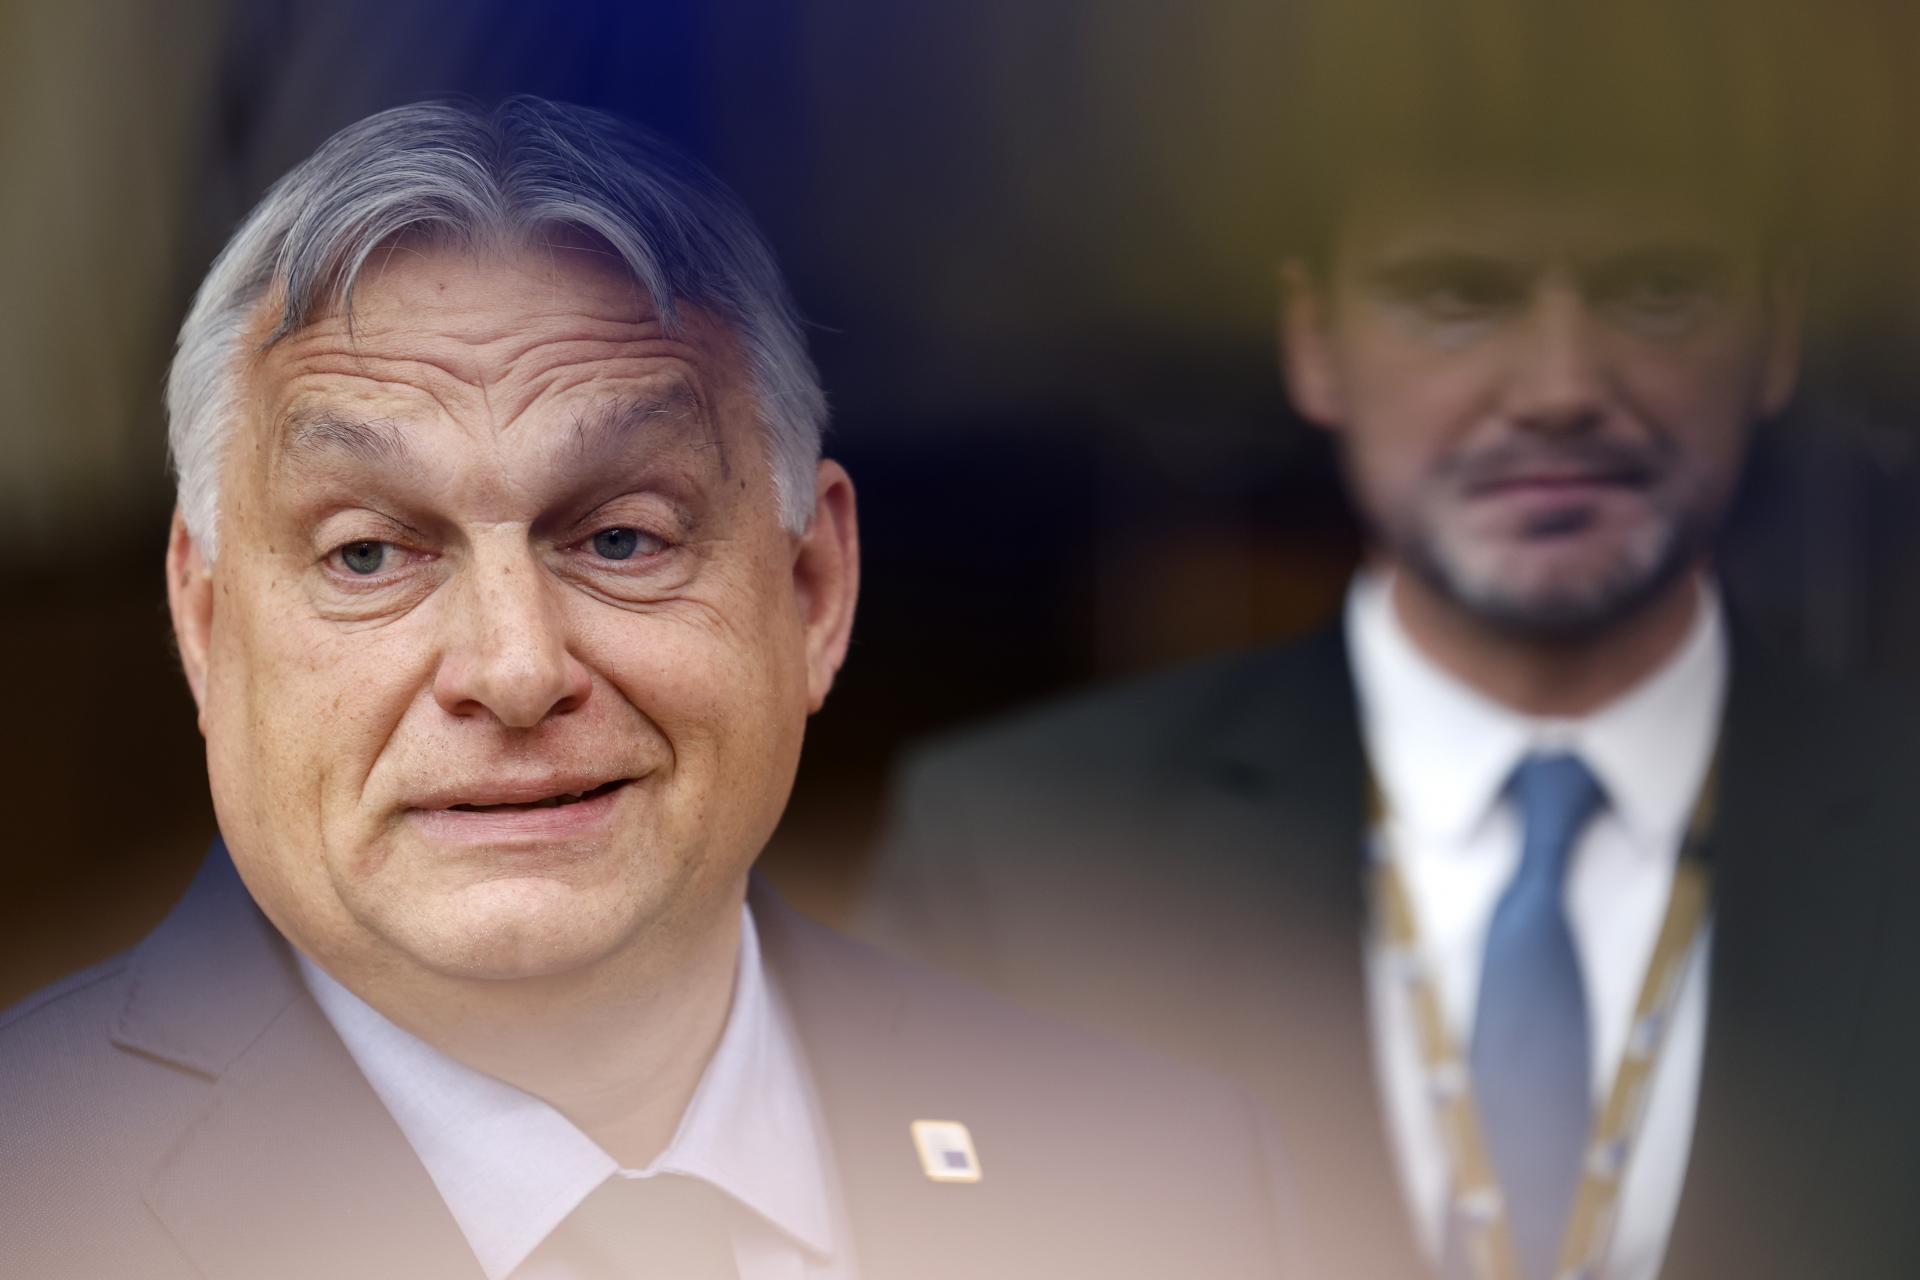 KOMENTÁR: Čo skutočne znamená Orbán pre Putina a Si Ťin-pchinga